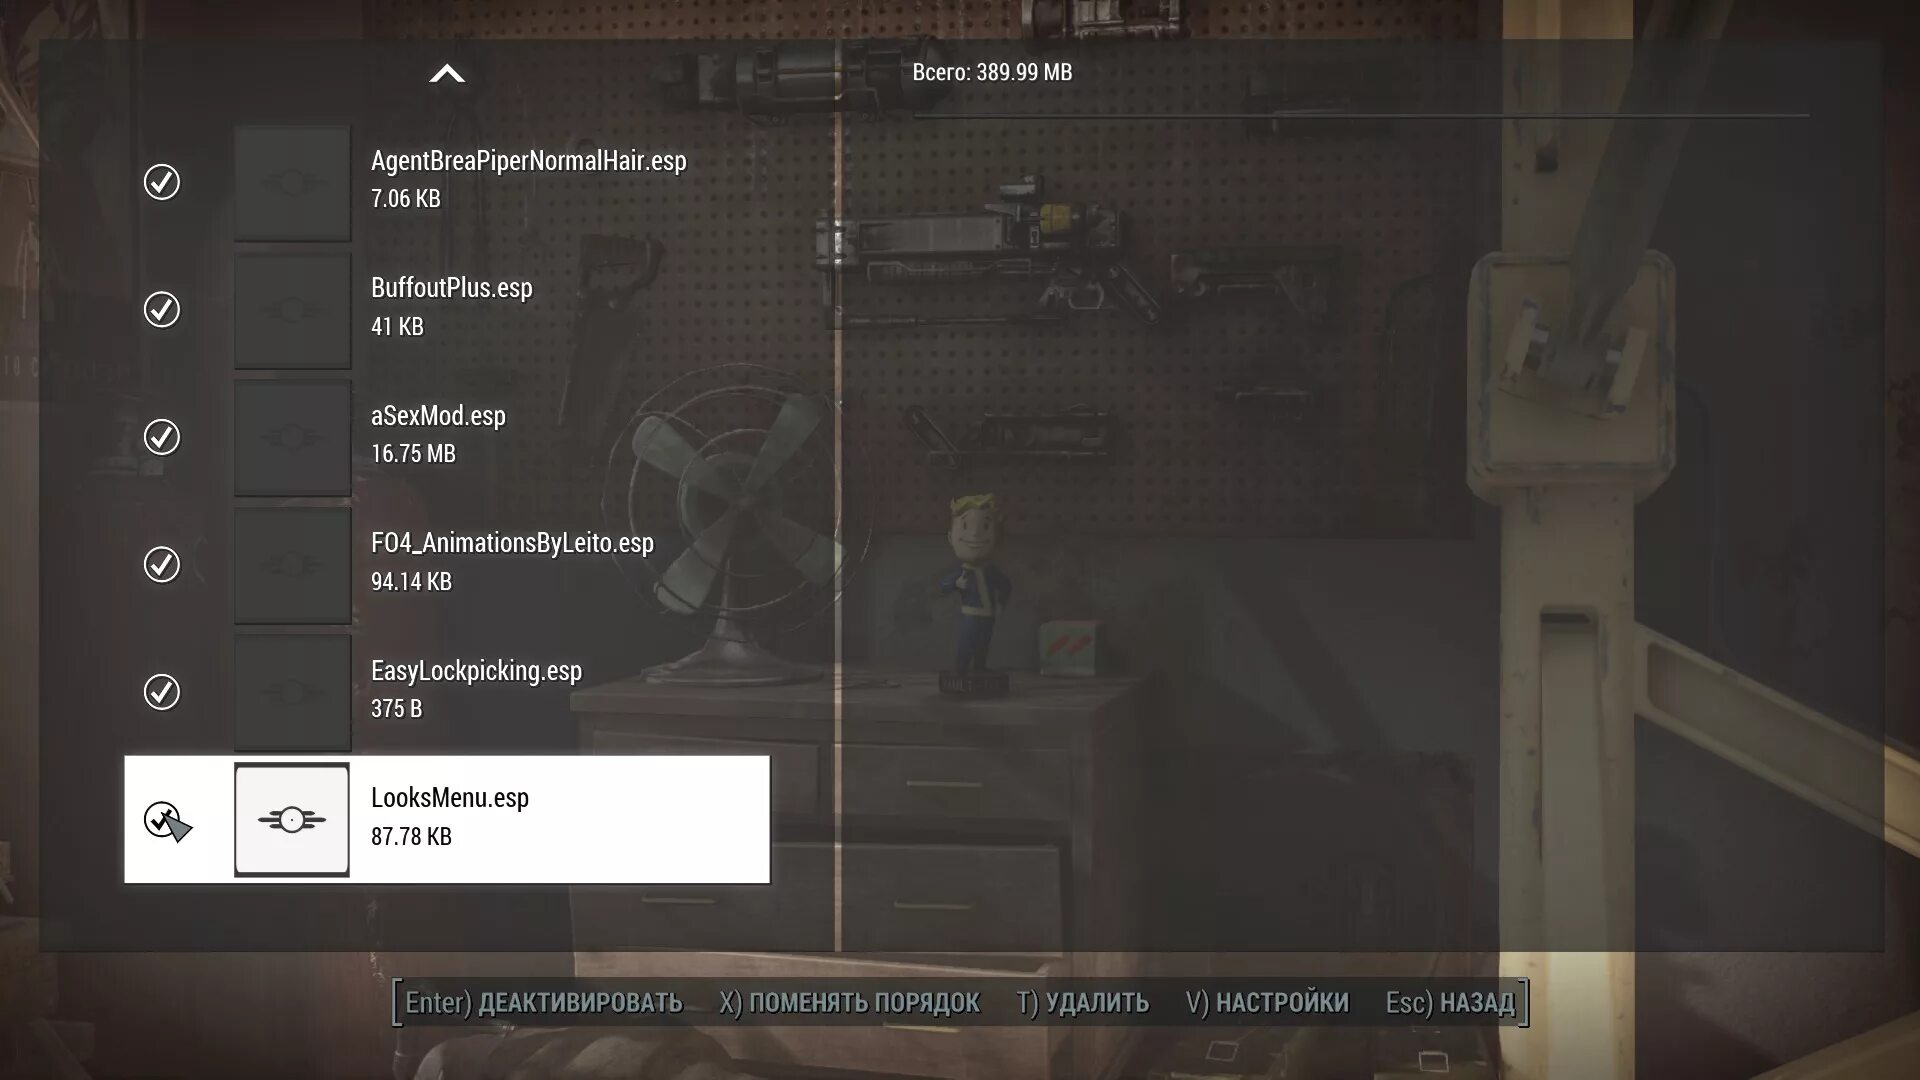 Fallout 4 menu. Фоллаут 4 все варианты команды show looks menu. Как открыть looks menu Fallout 4. Fallout 4 осколки от выстрелов.